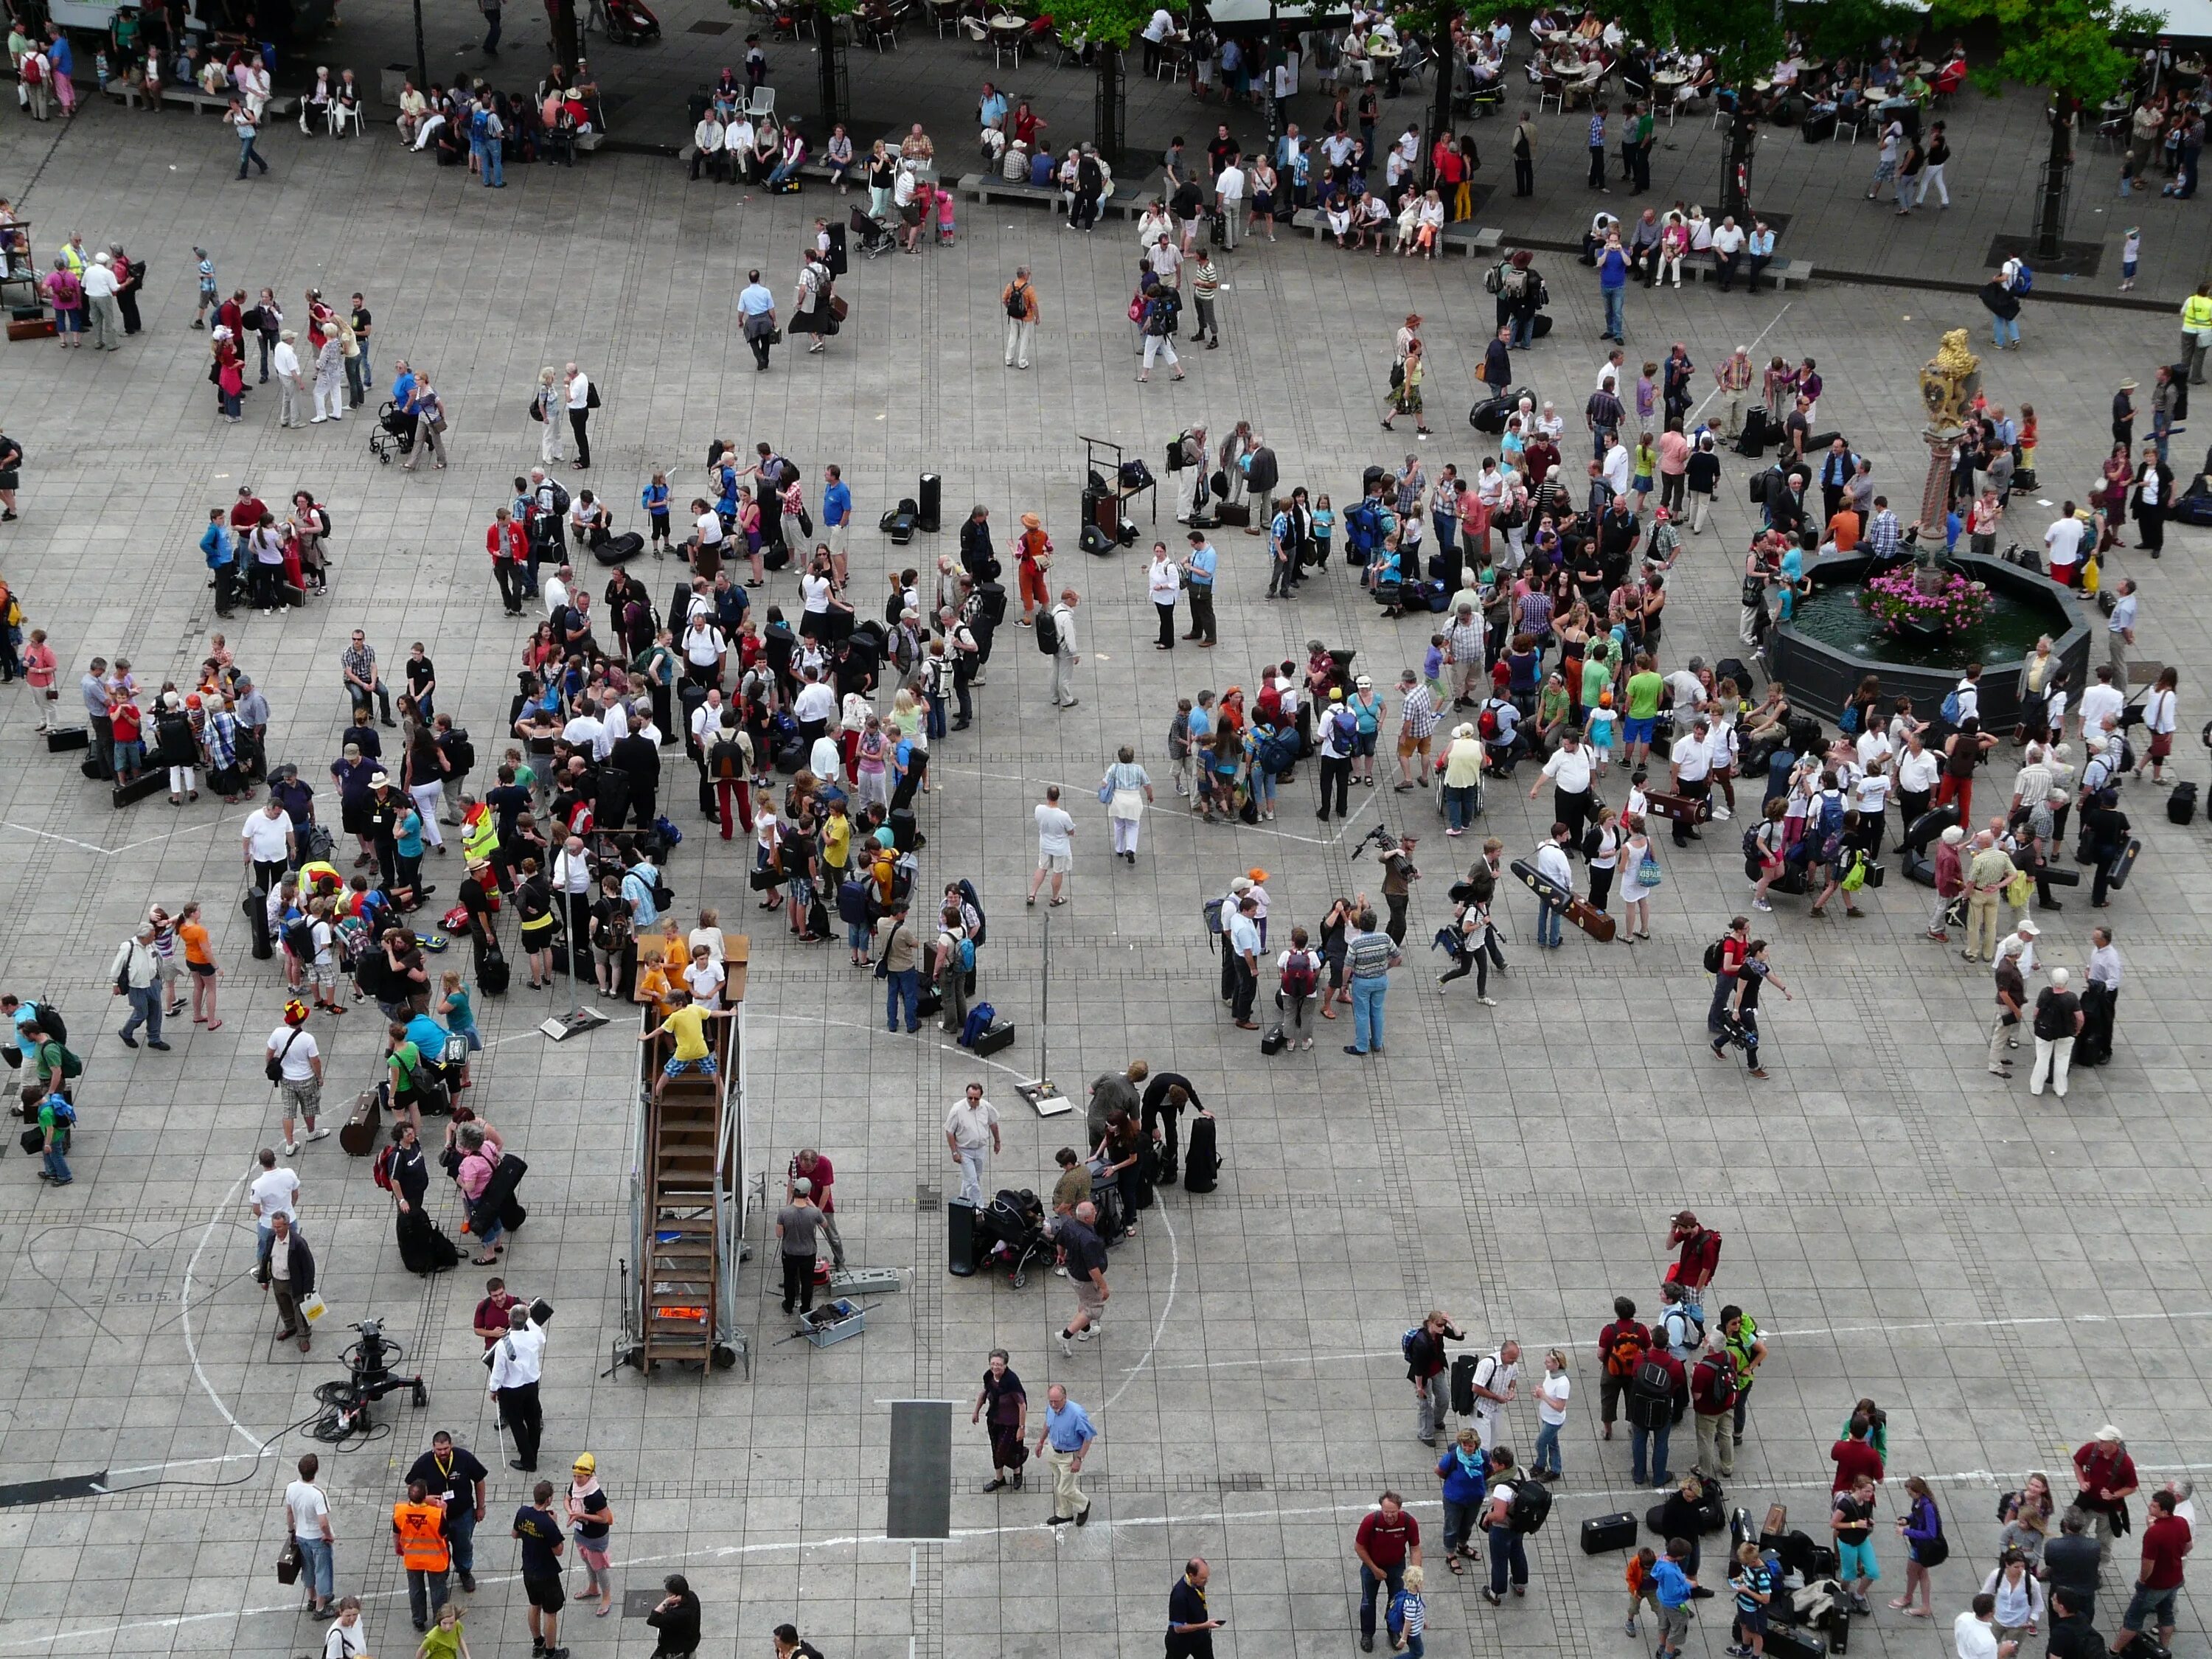 Много людей на площади. Человек толпы. Площадь с кучей людей. Толпа вид сверху. Группа 1000 человек